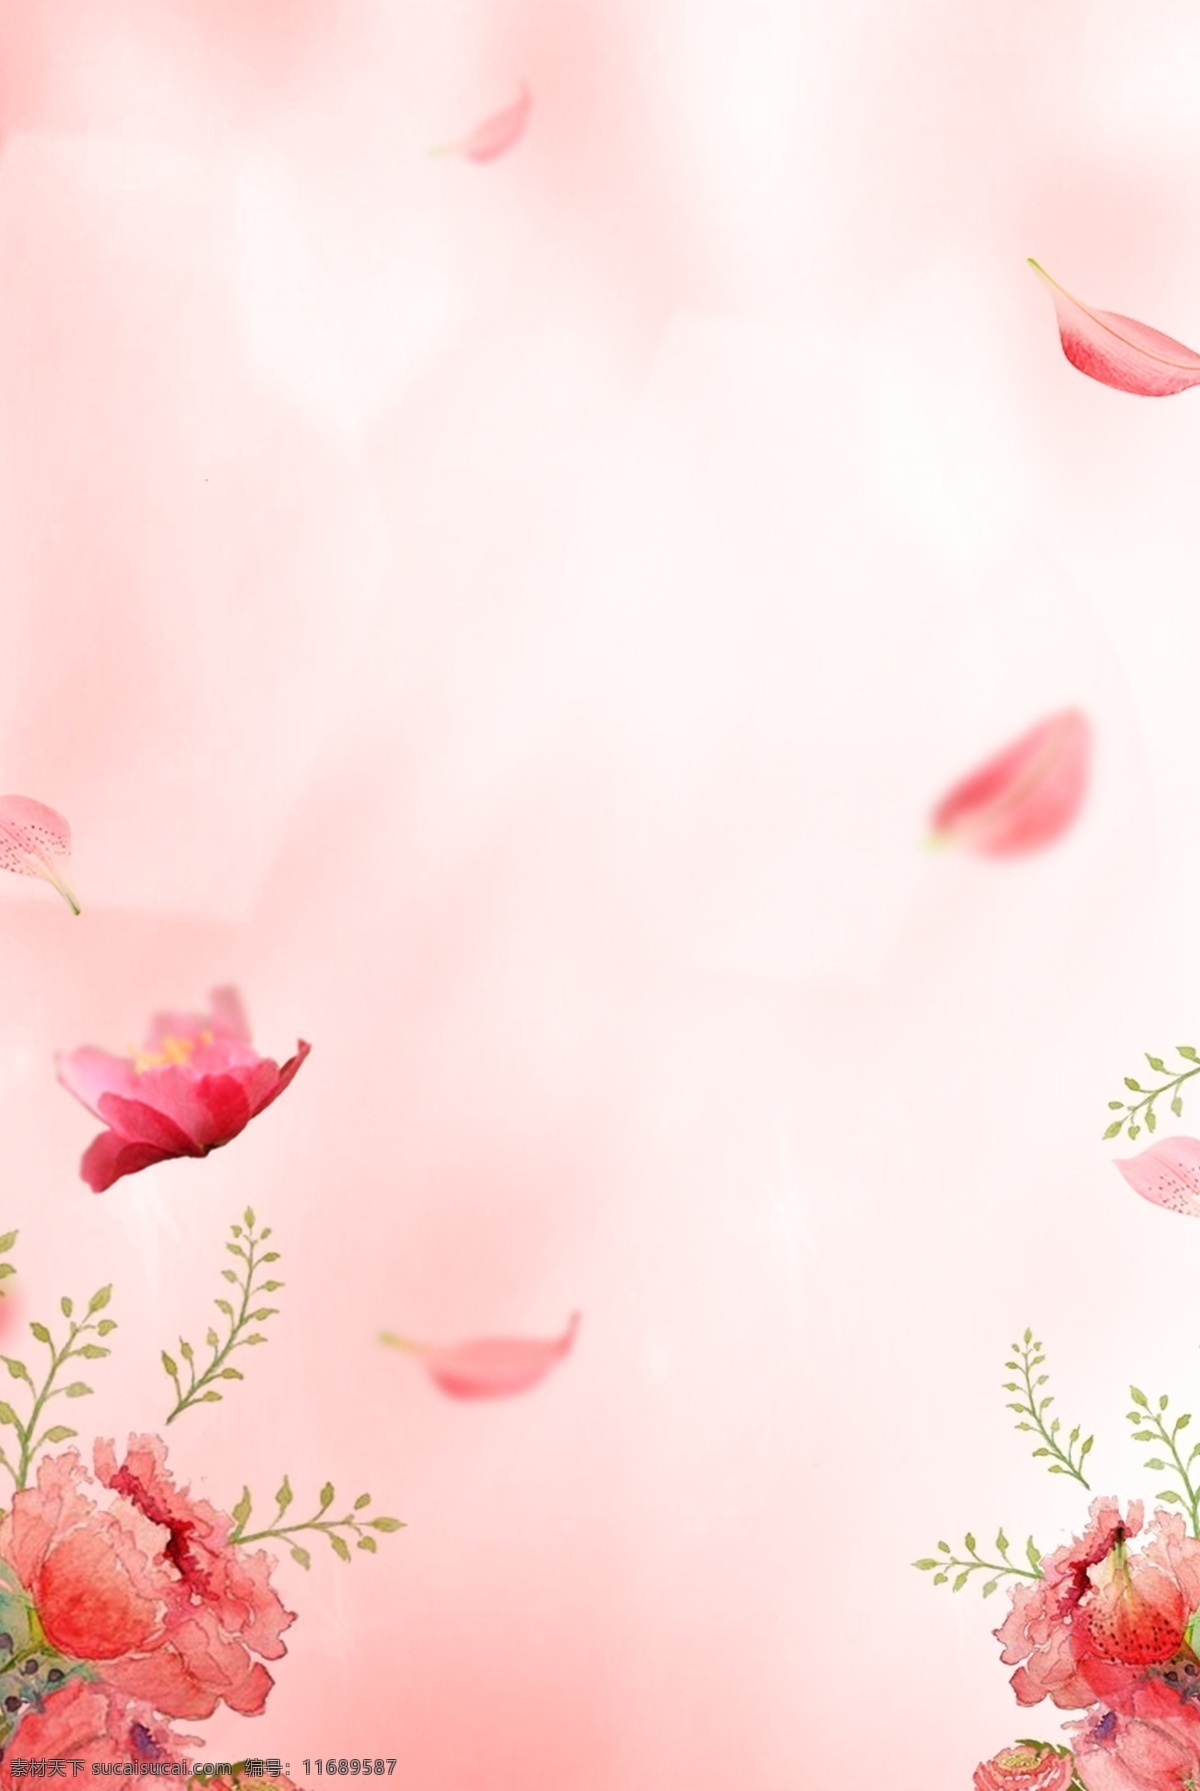 小 清新 唯美 花朵 海报 背景 小清新 简约 边框 典雅 植物 自然